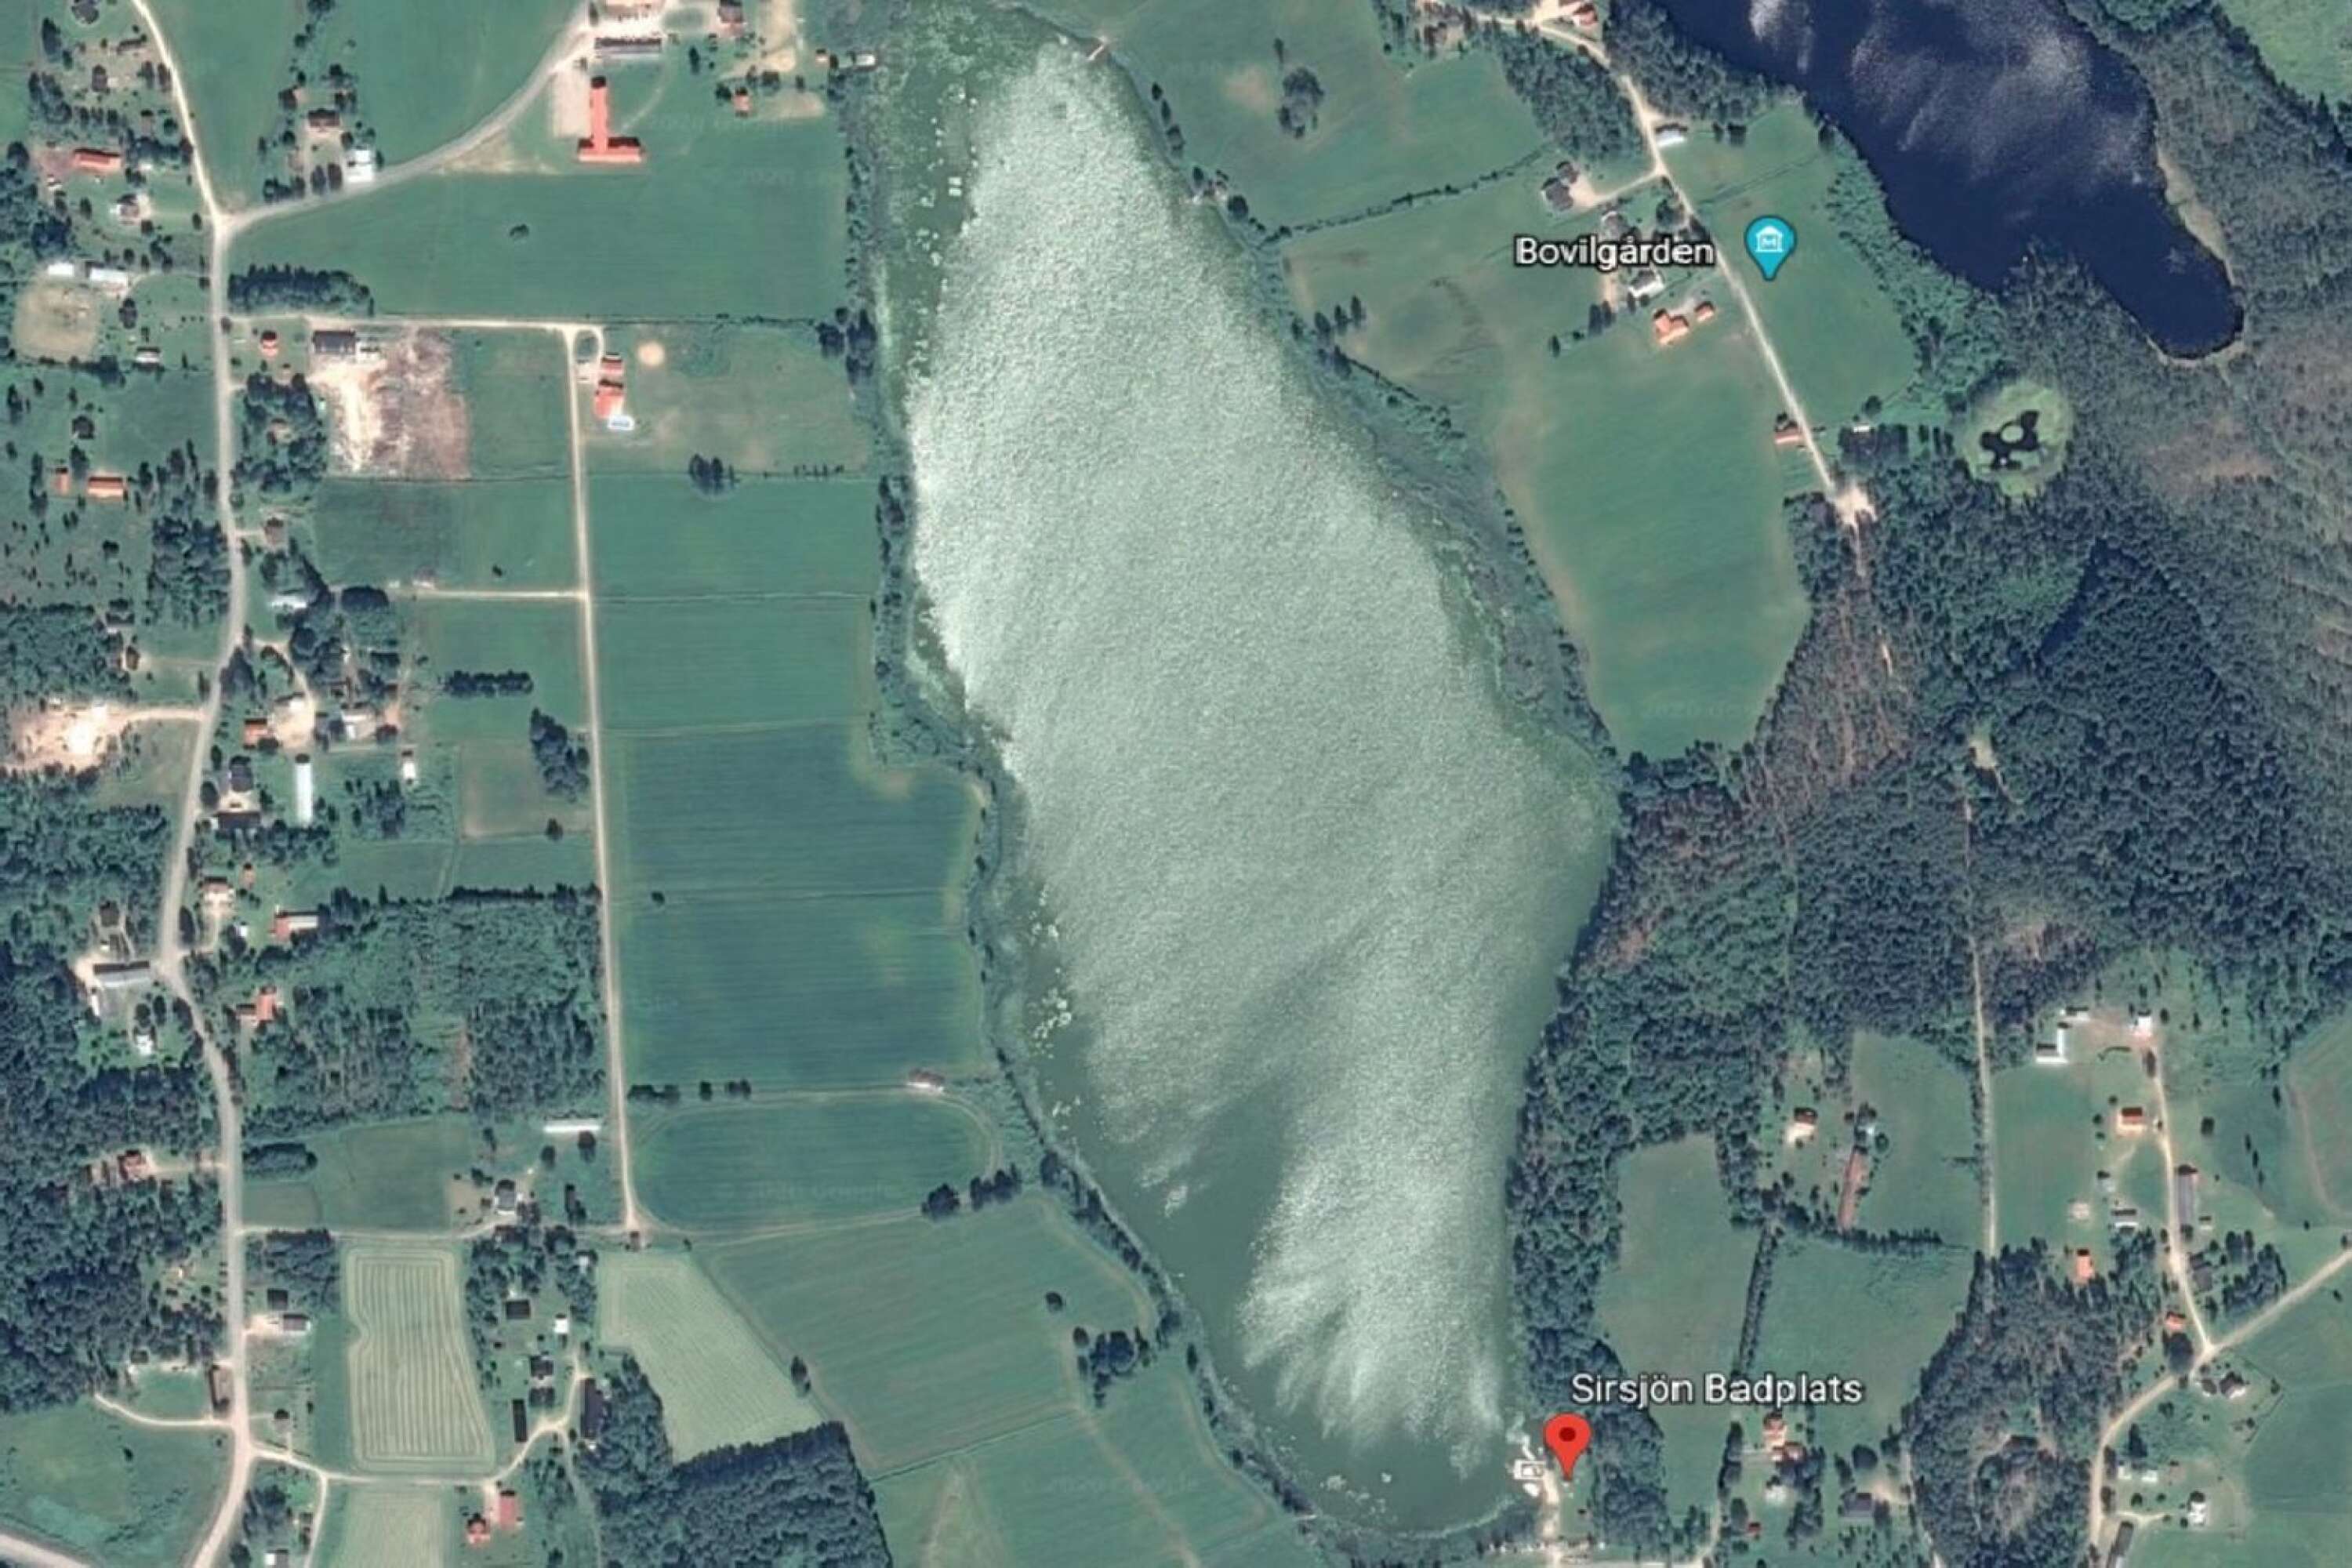 Sirsjön mitt i algblomningen, sedd från Google Earth.